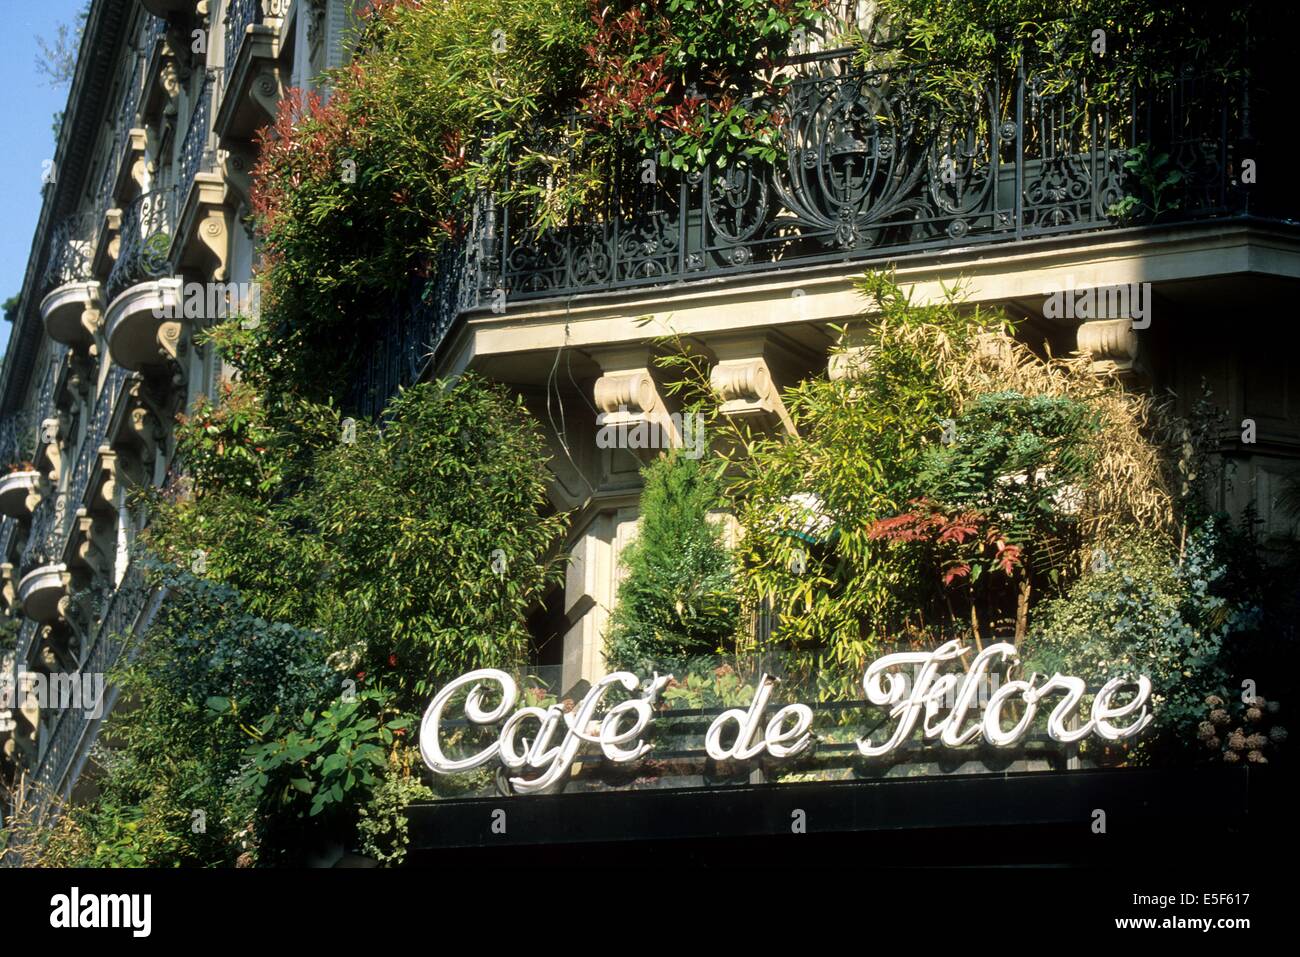 Francia, ile de france, paris 6e, saint germain des pres, cafe de flore, boulevard saint germain. Data : 2011-2012 Foto Stock